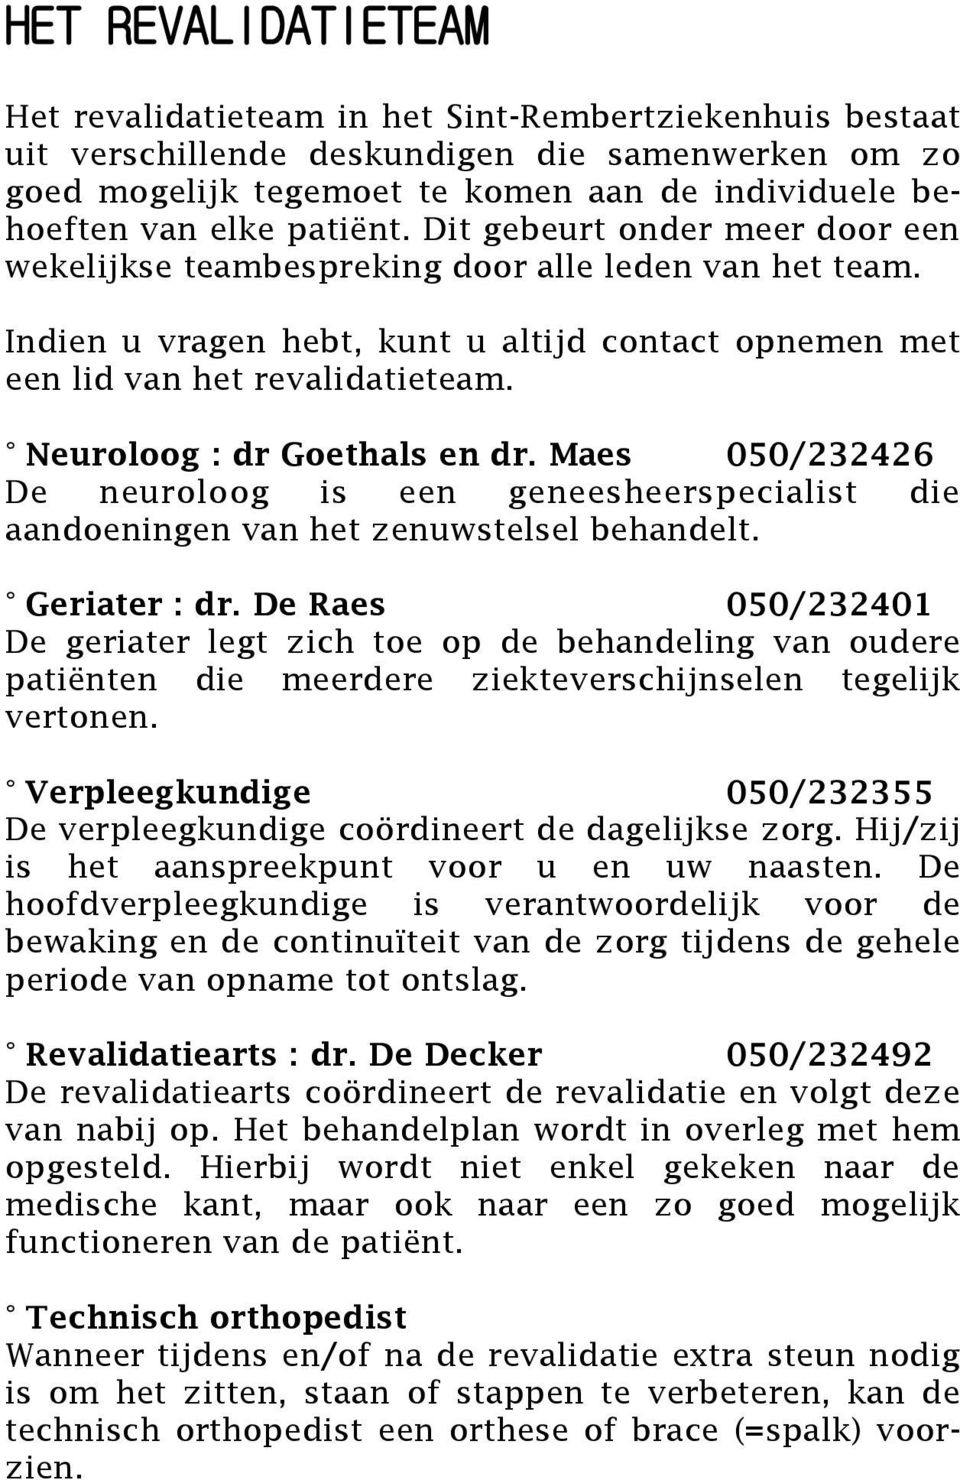 Neuroloog : dr Goethals en dr. Maes 050/232426 De neuroloog is een geneesheerspecialist die aandoeningen van het zenuwstelsel behandelt. Geriater : dr.